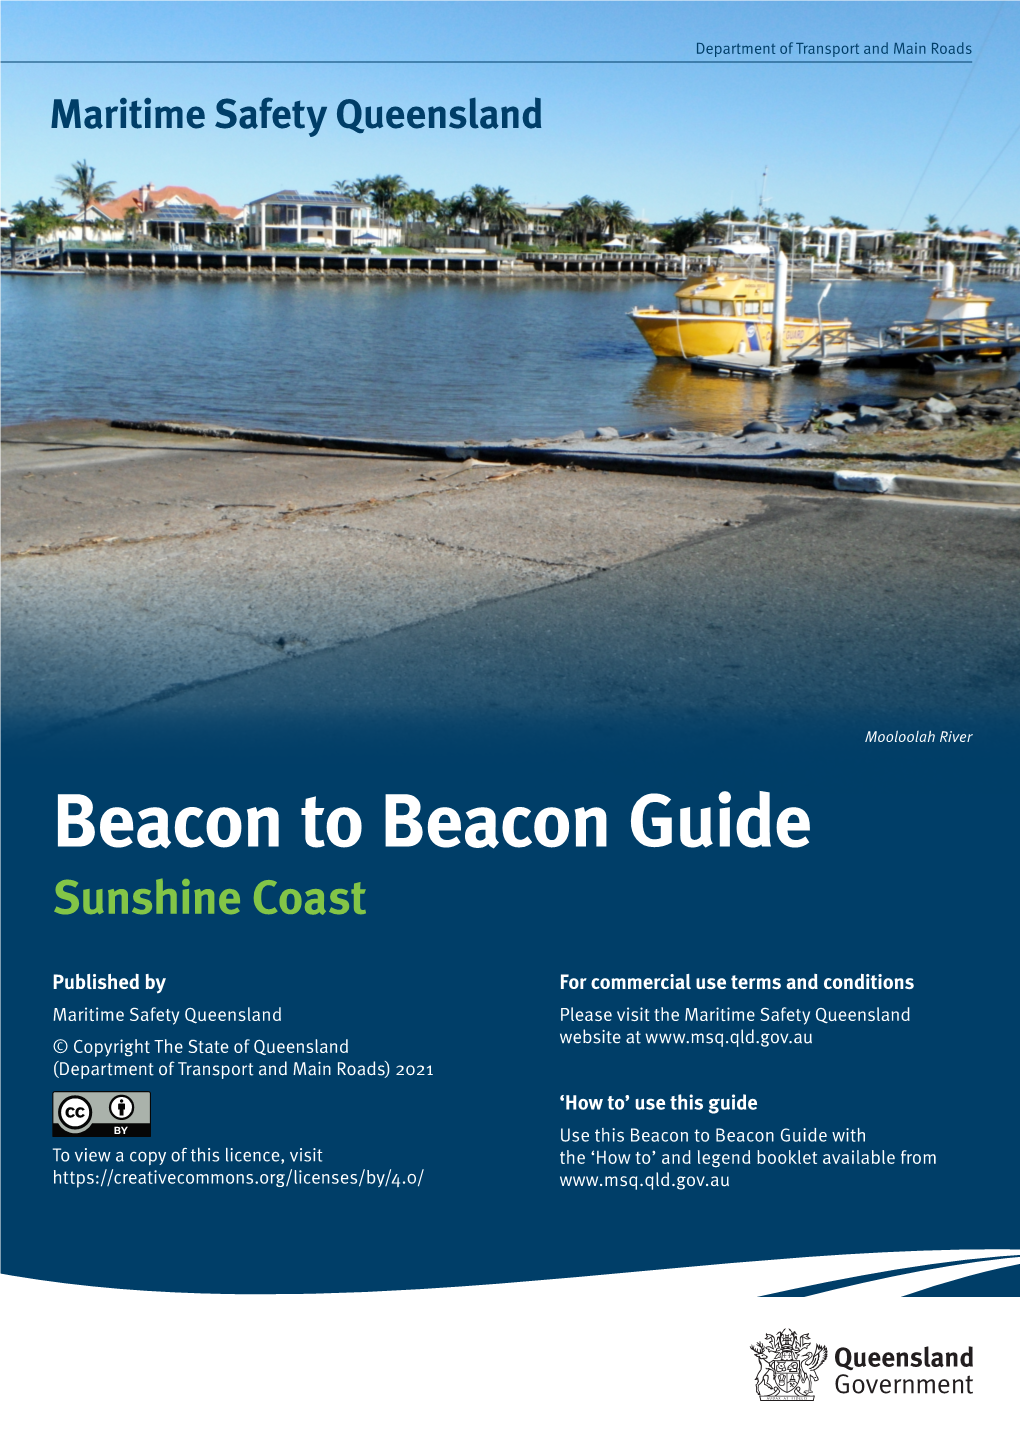 Beacon to Beacon Guide: Sunshine Coast